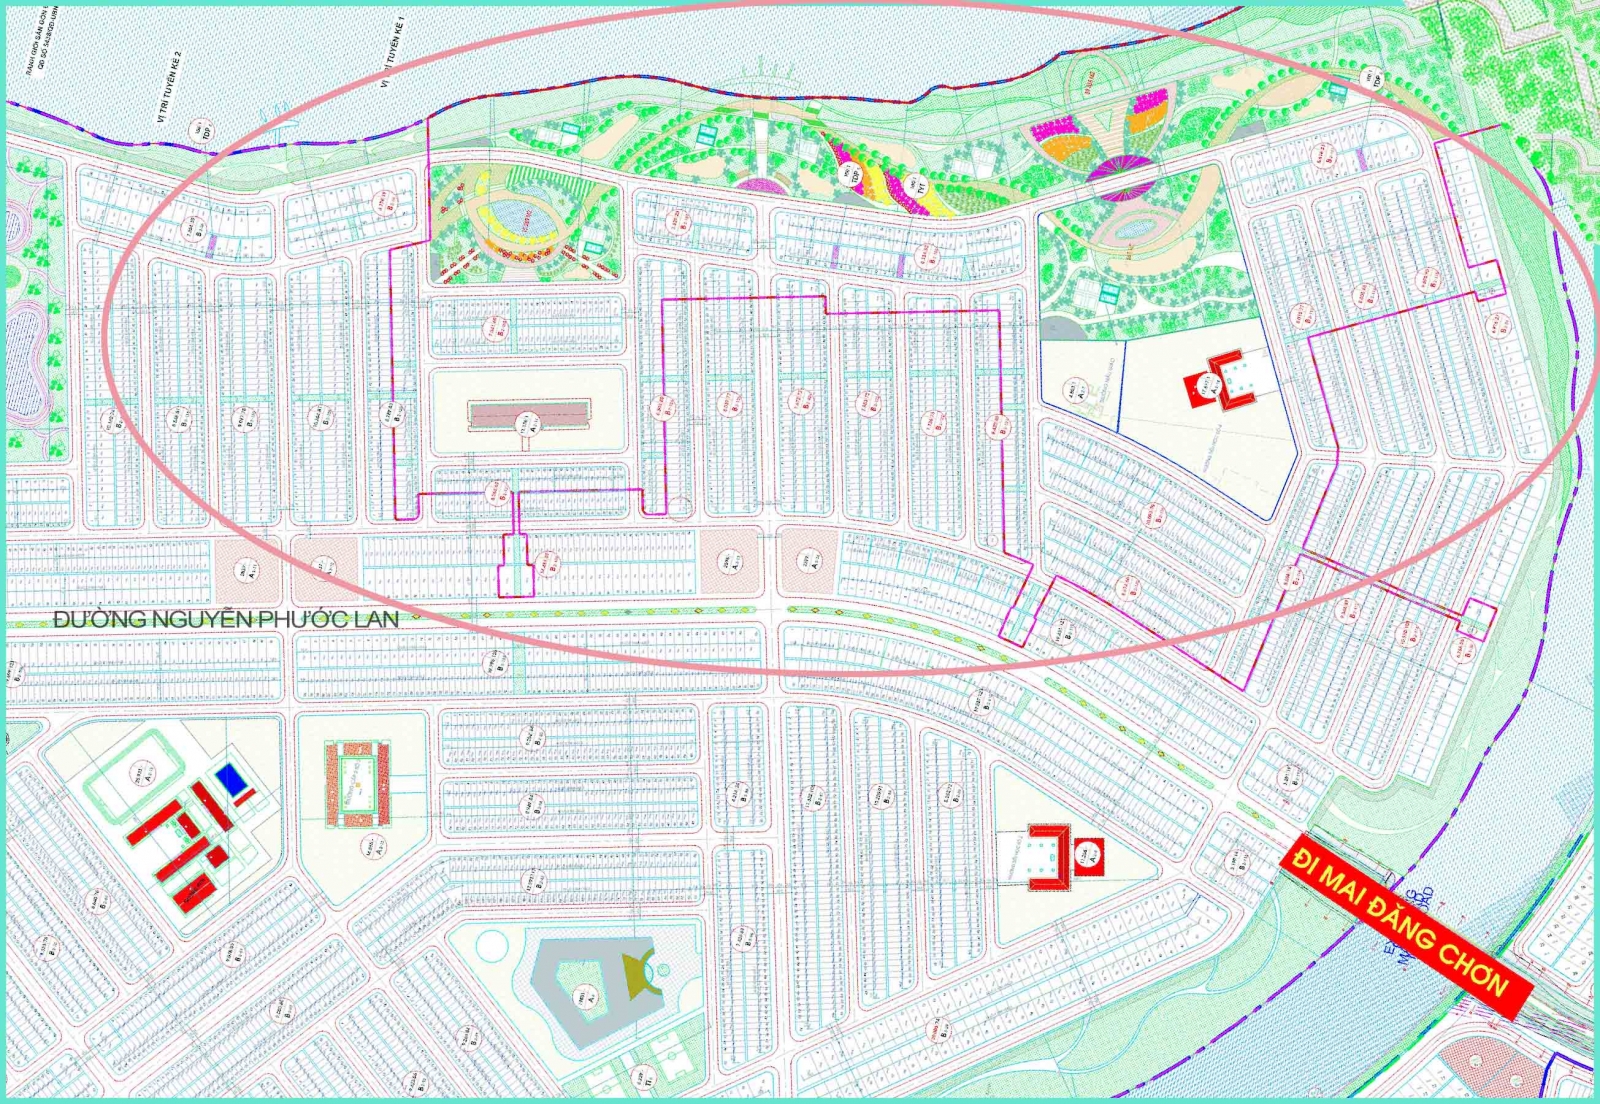 Bộ sưu tập bản đồ quy hoạch hòa xuân đà nẵng đầy đủ và chi tiết